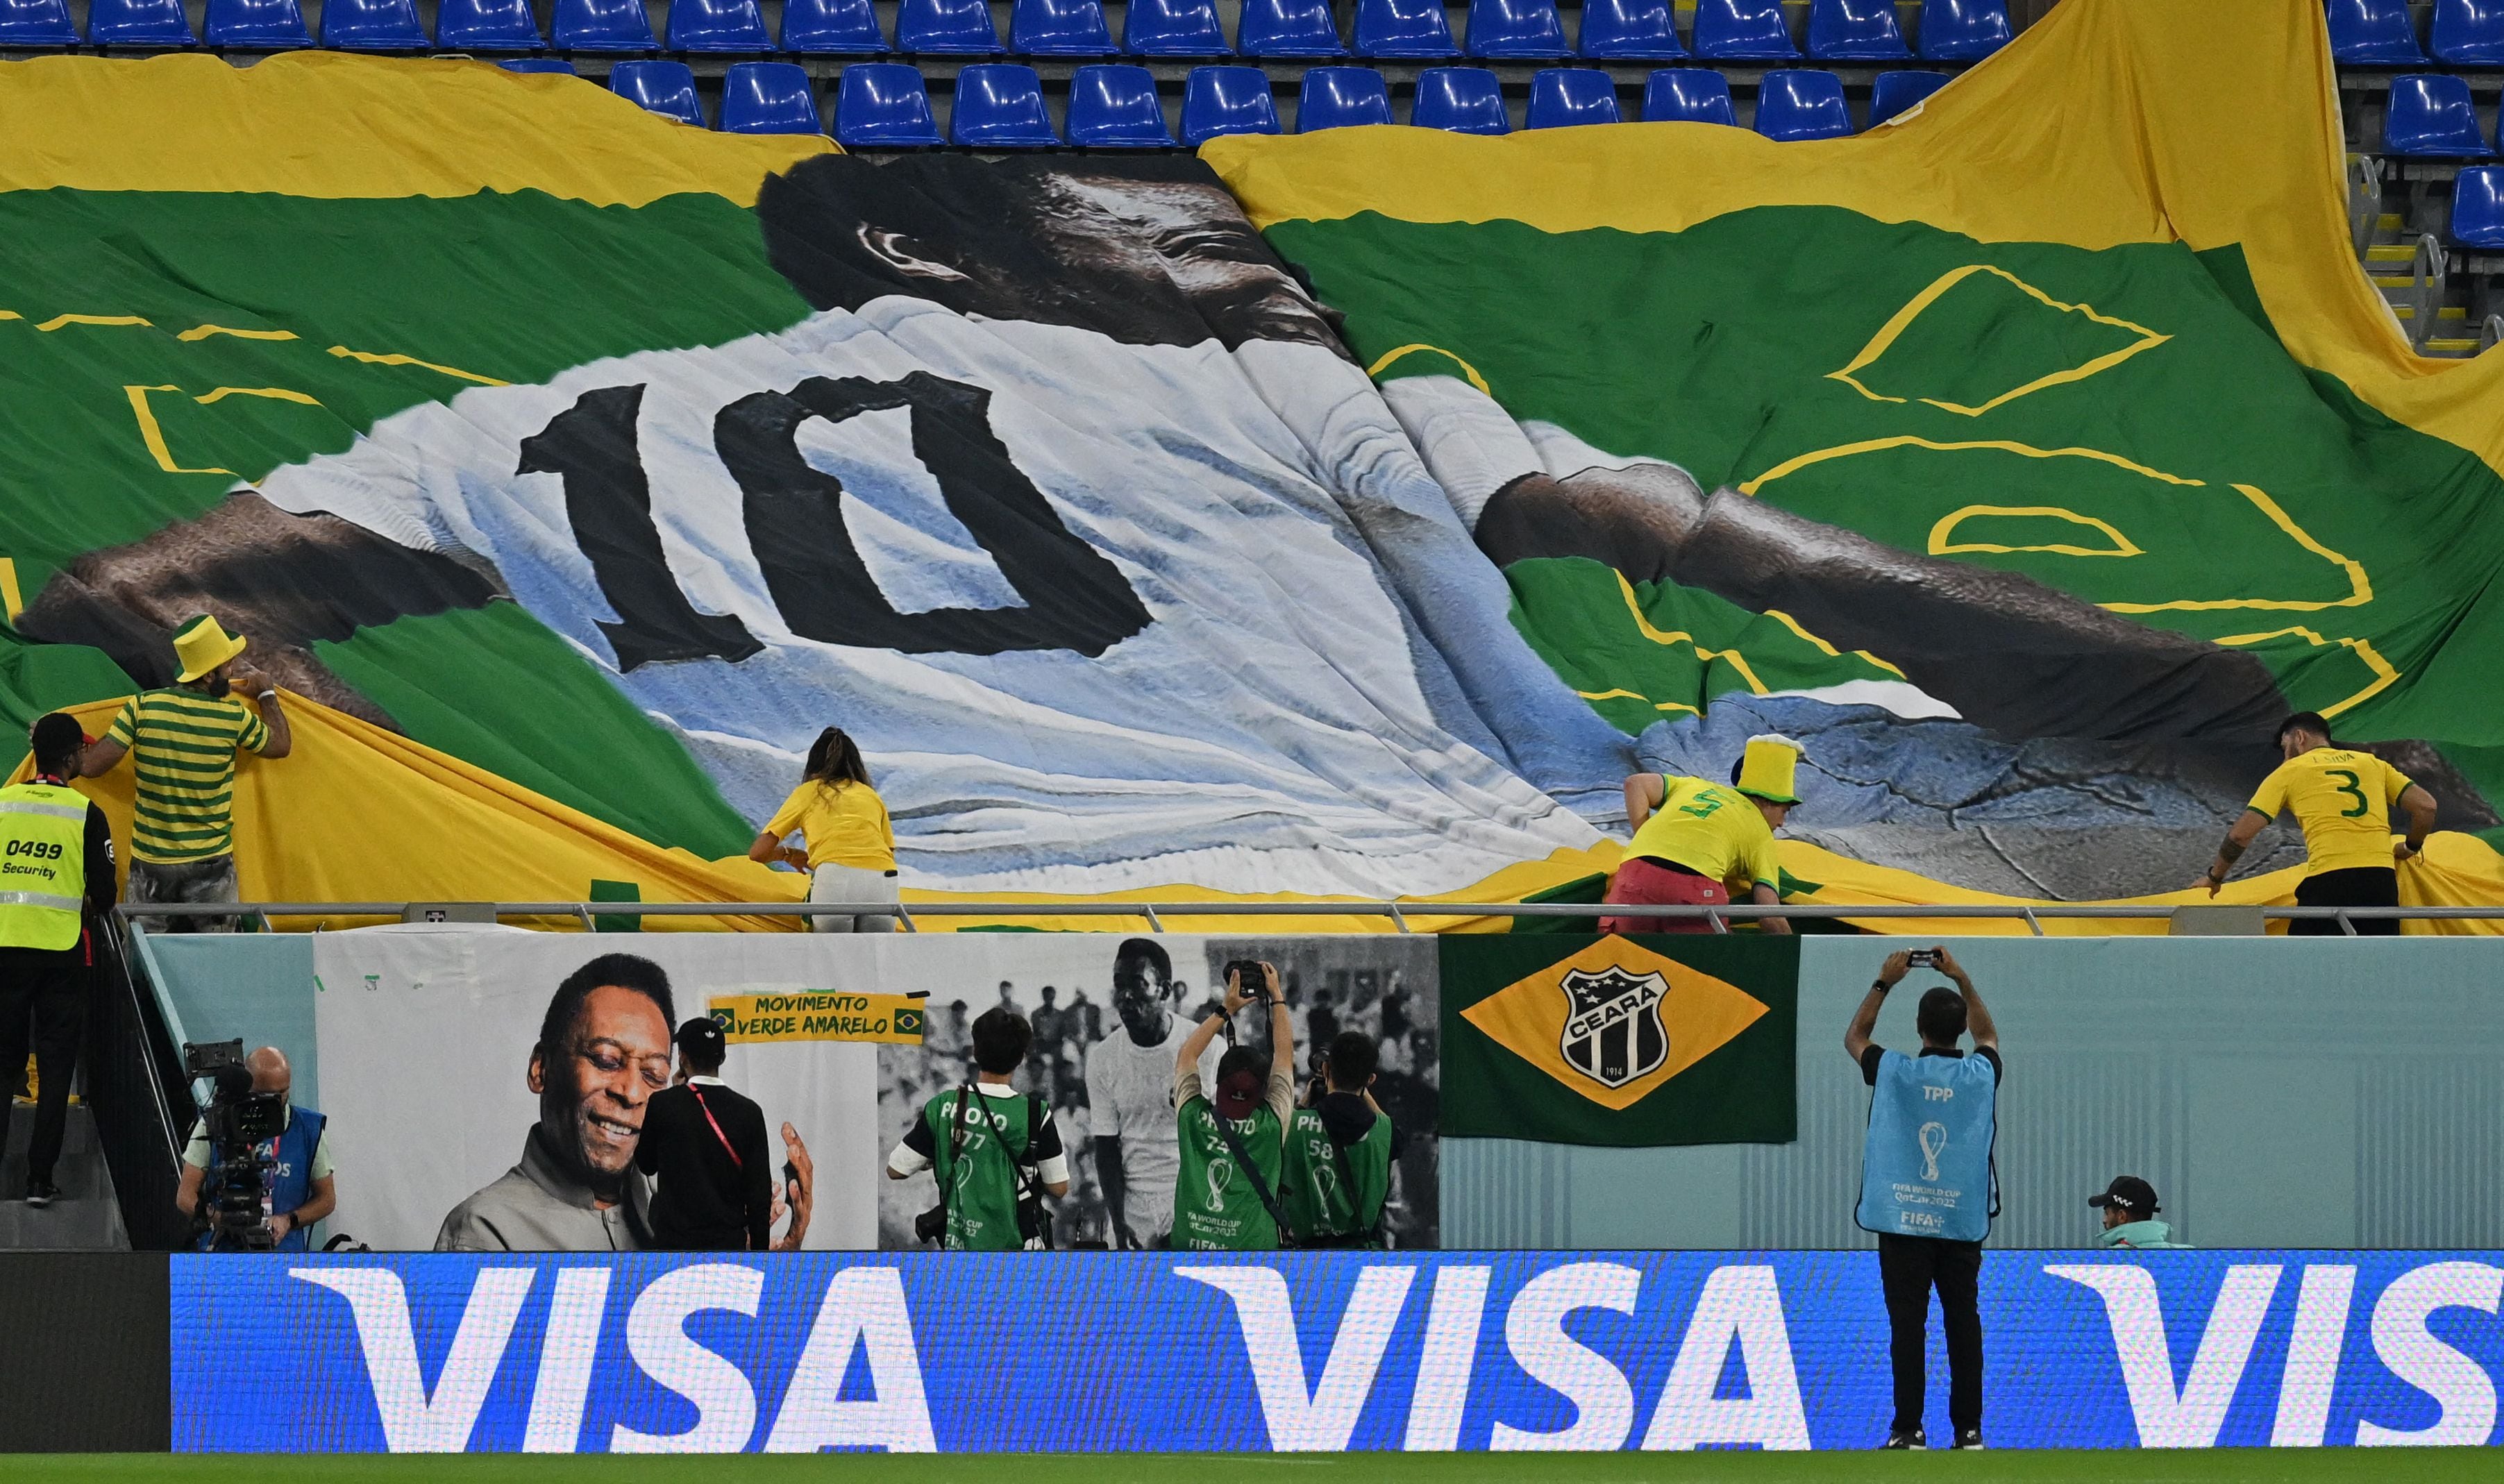 La bandera en homenaje a Pelé que desplegaron en el Estadio 974 en el minuto 10 del Brasil-Corea del Sur